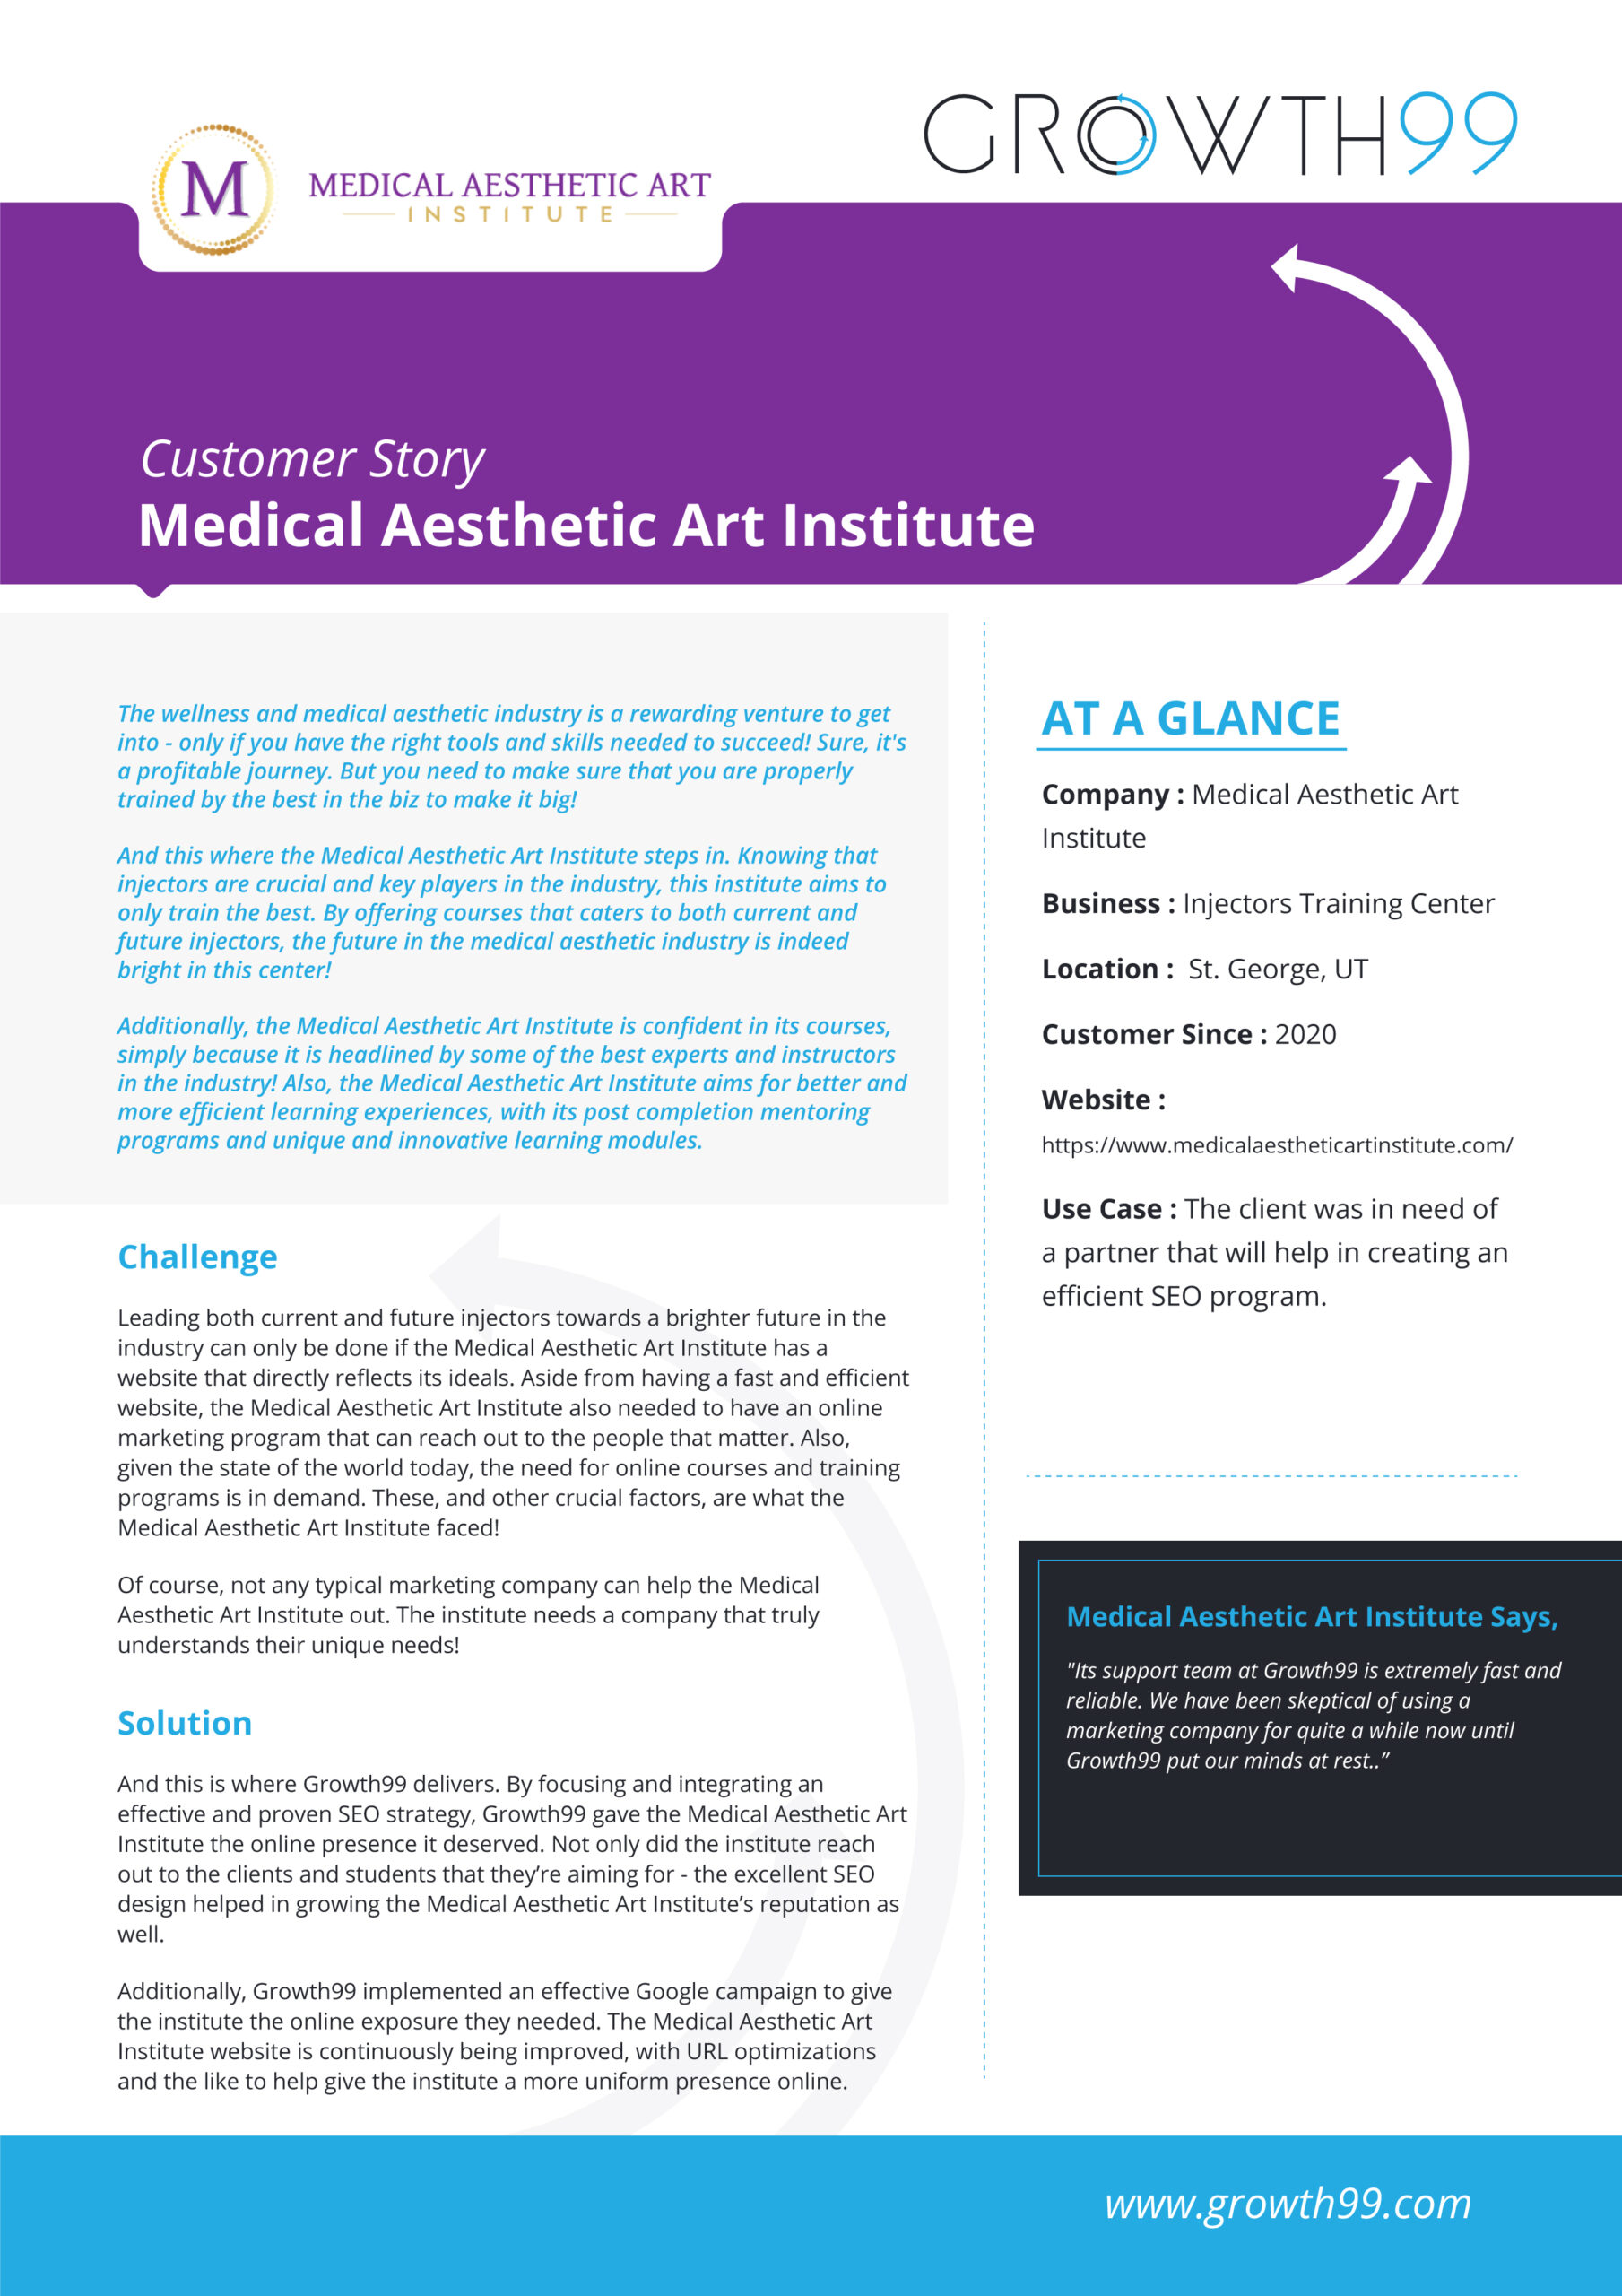 Medical Aesthetic Art Institute Case Study